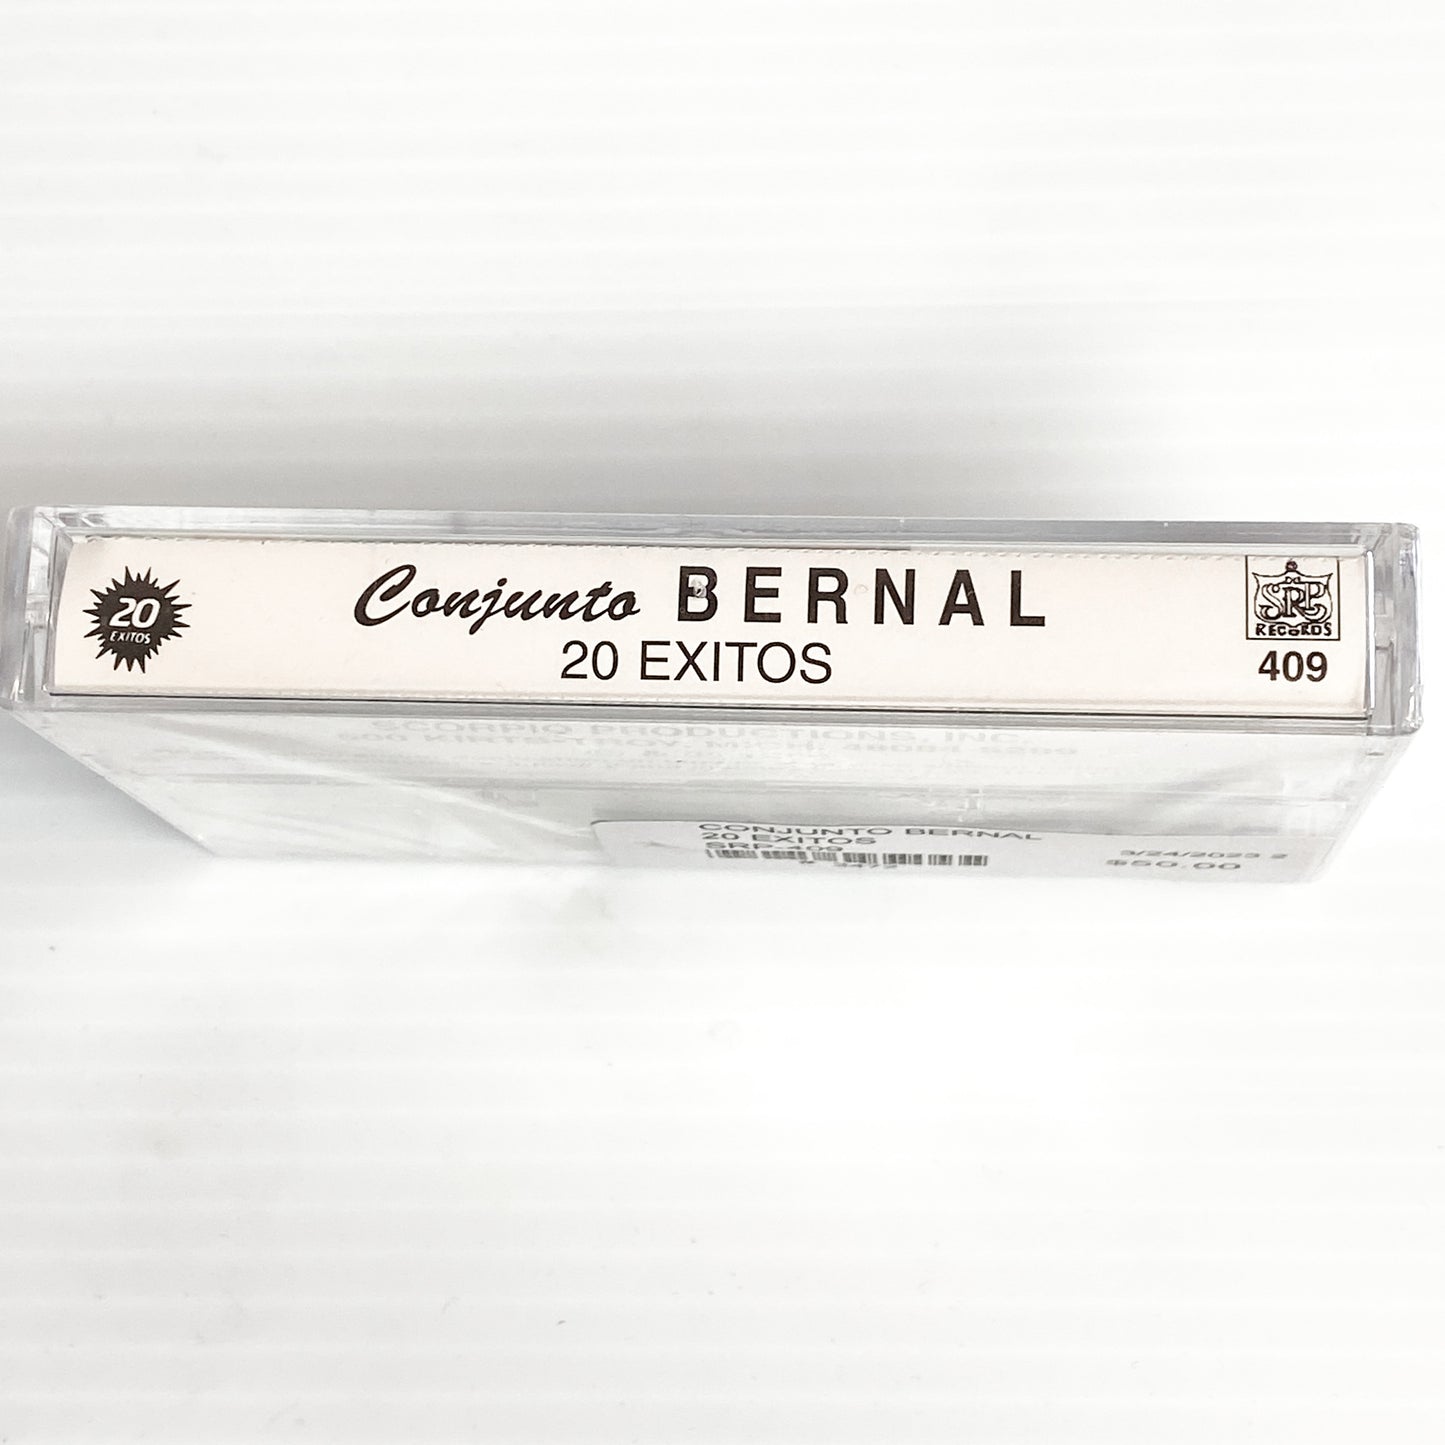 Conjunto Bernal - 20 Exitos (Cassette)